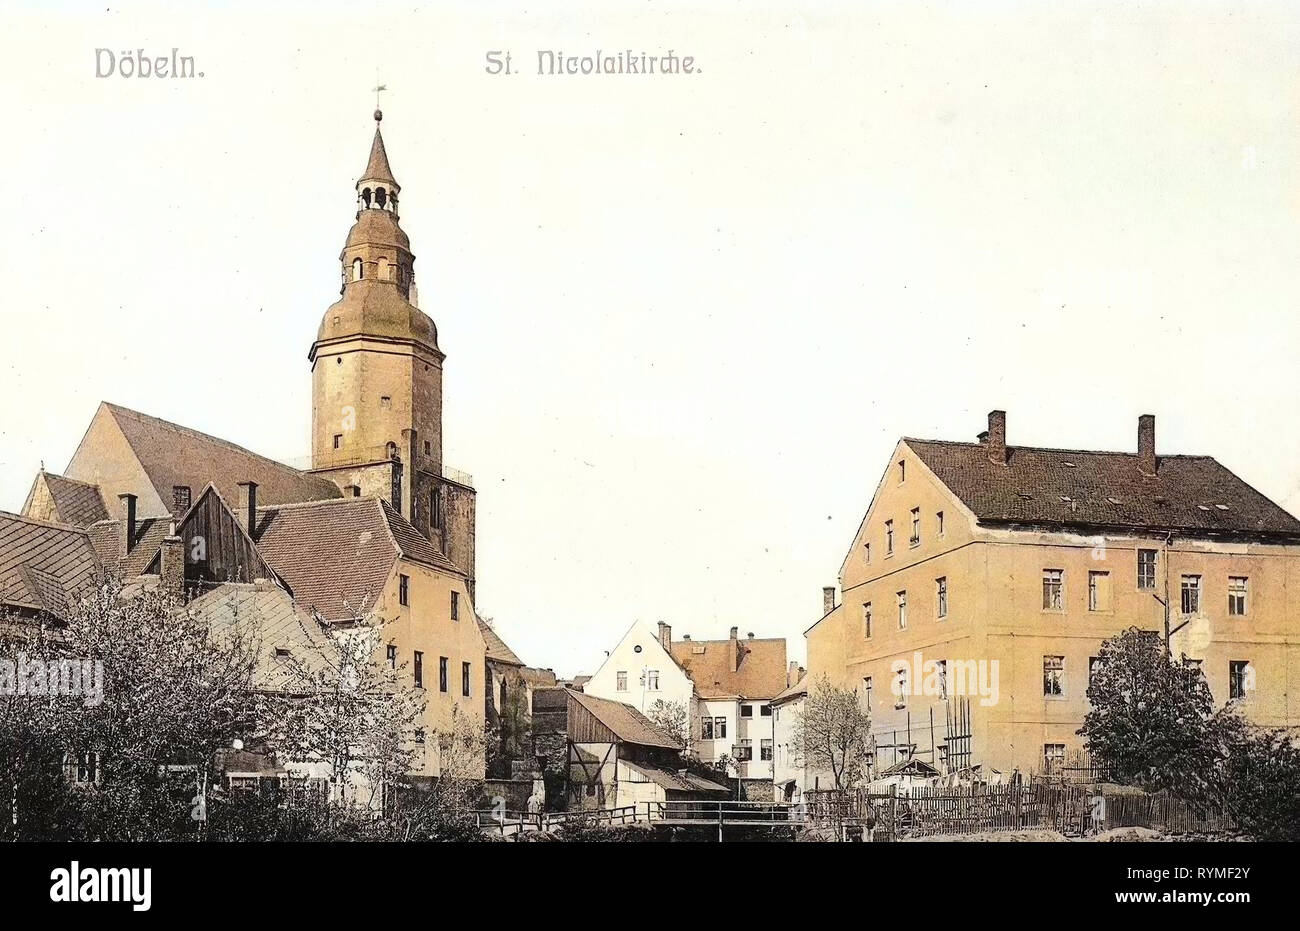 Églises à Döbeln, bâtiments à Döbeln, 1907, Landkreis Mittelsachsen, Döbeln, St. Nicolaikirche, Allemagne Banque D'Images